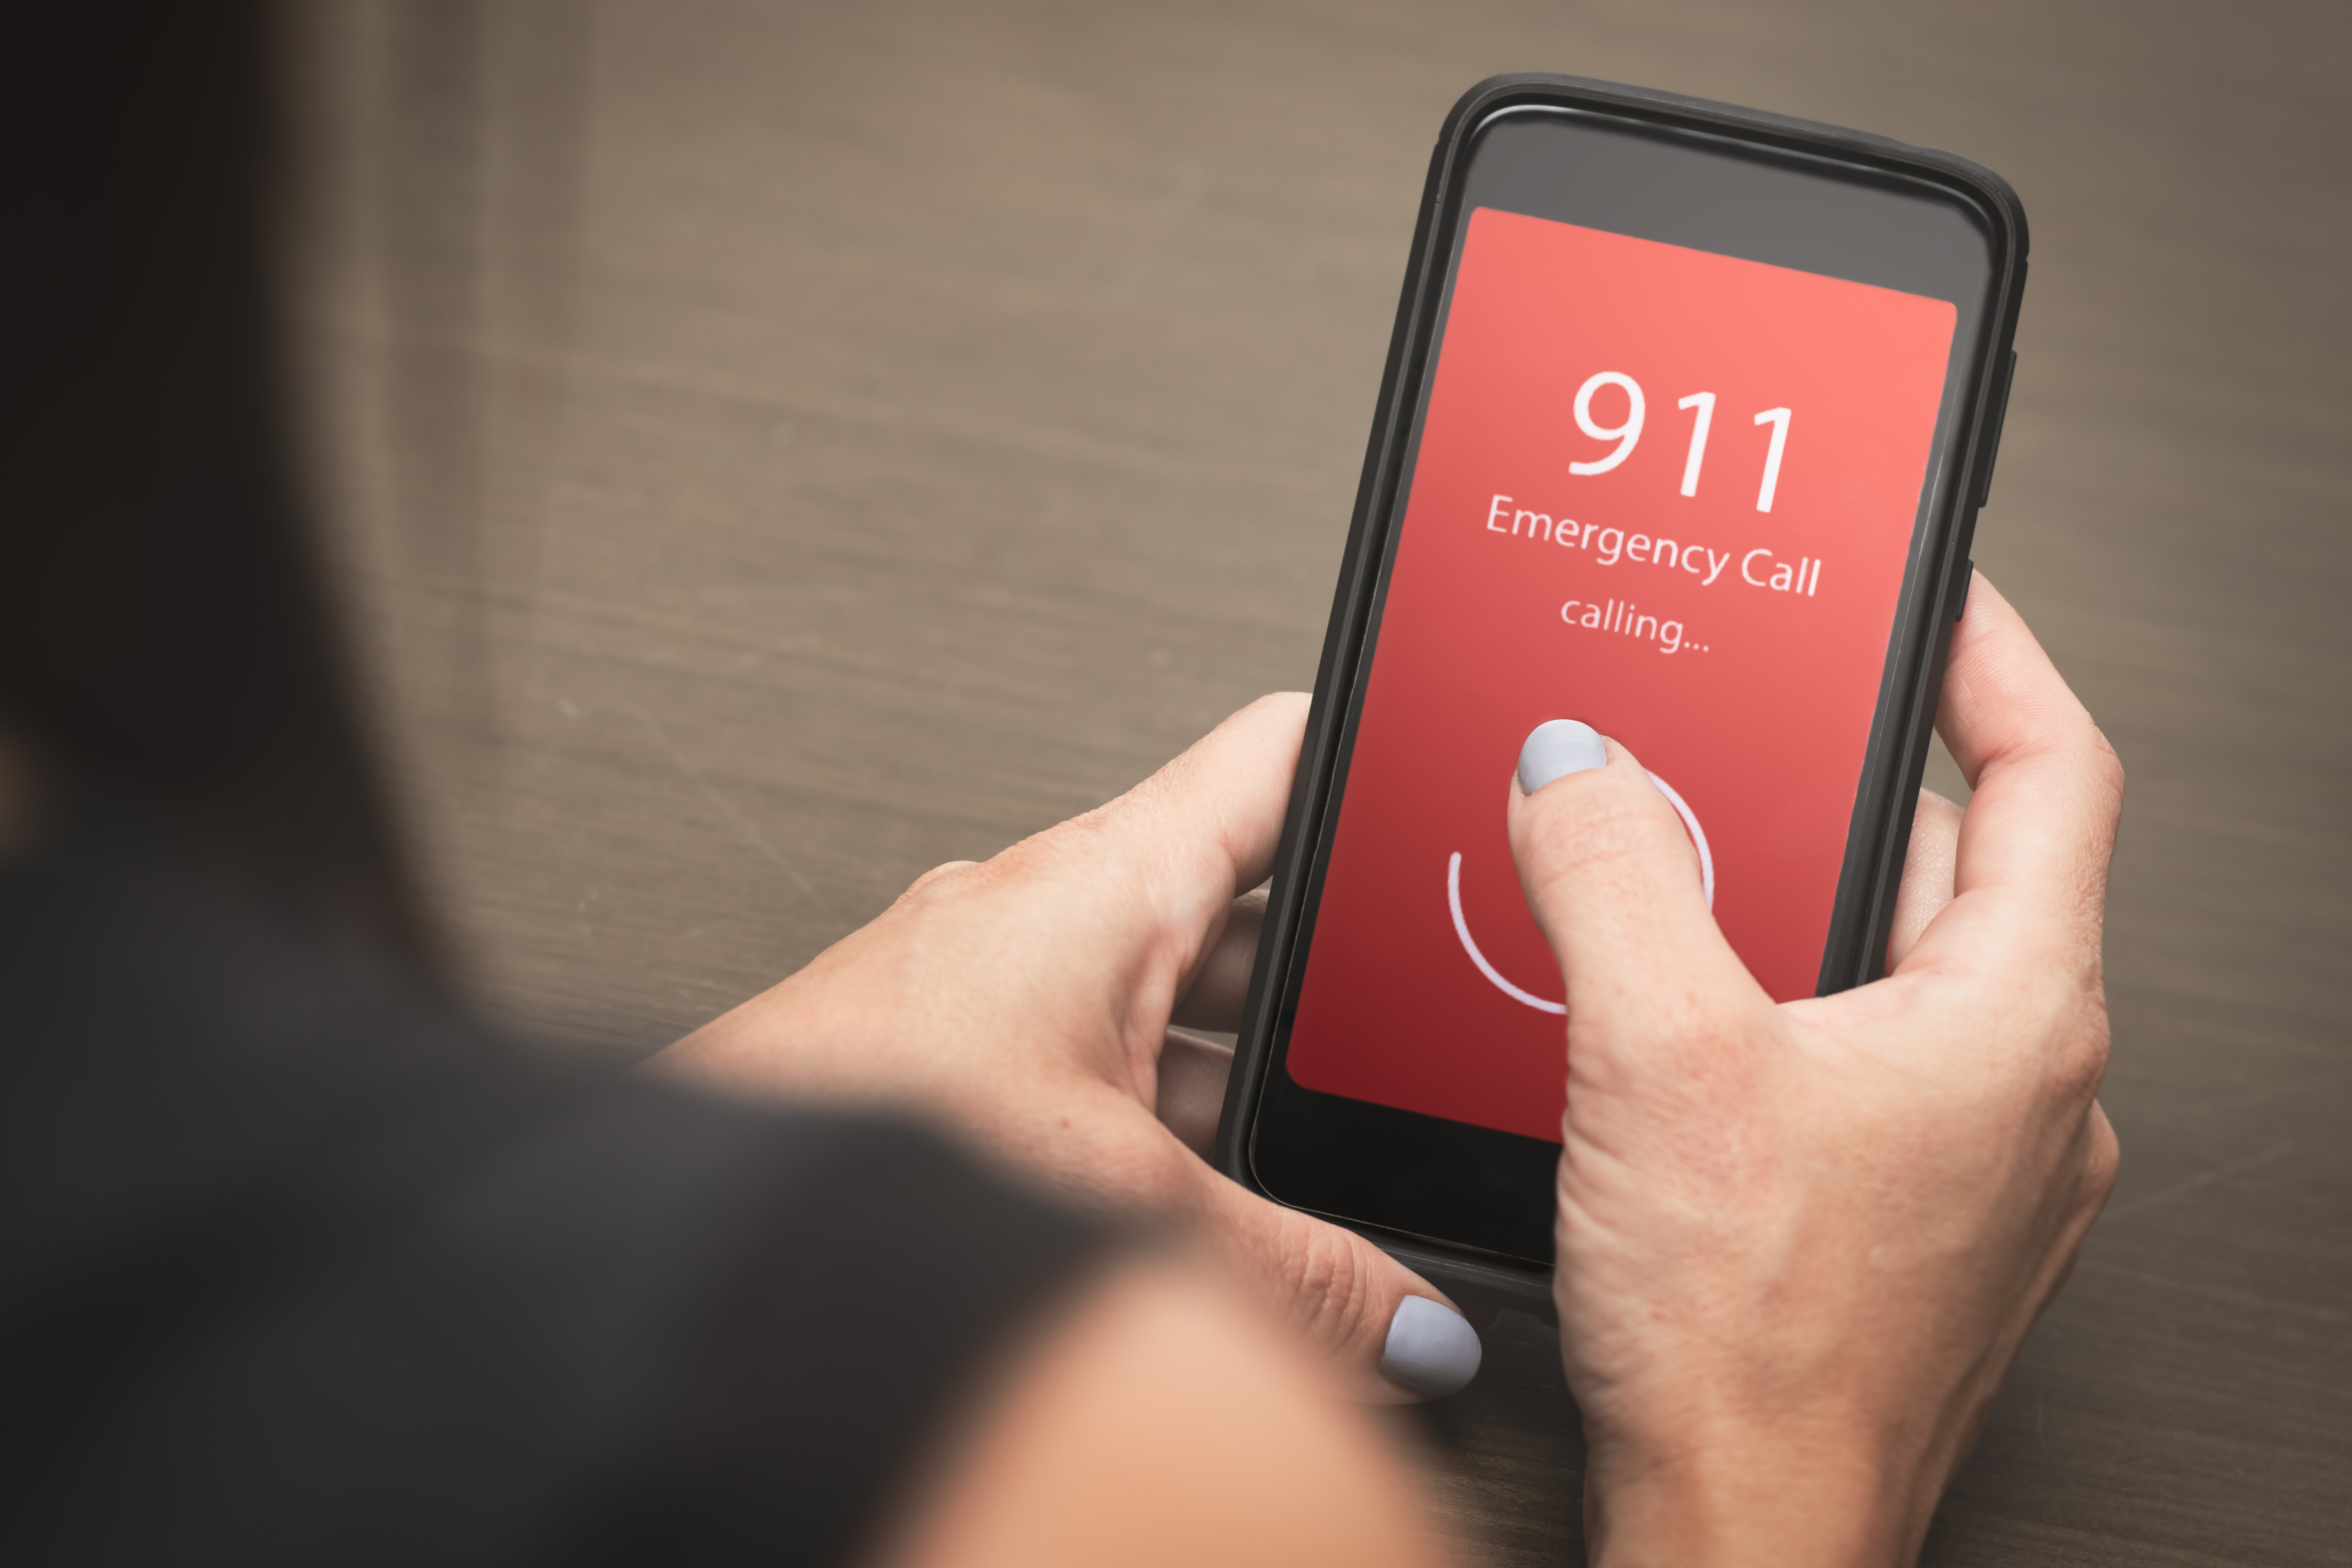 Llamada de emergencia al 911 desde el móvil | Fuente: Shutterstock